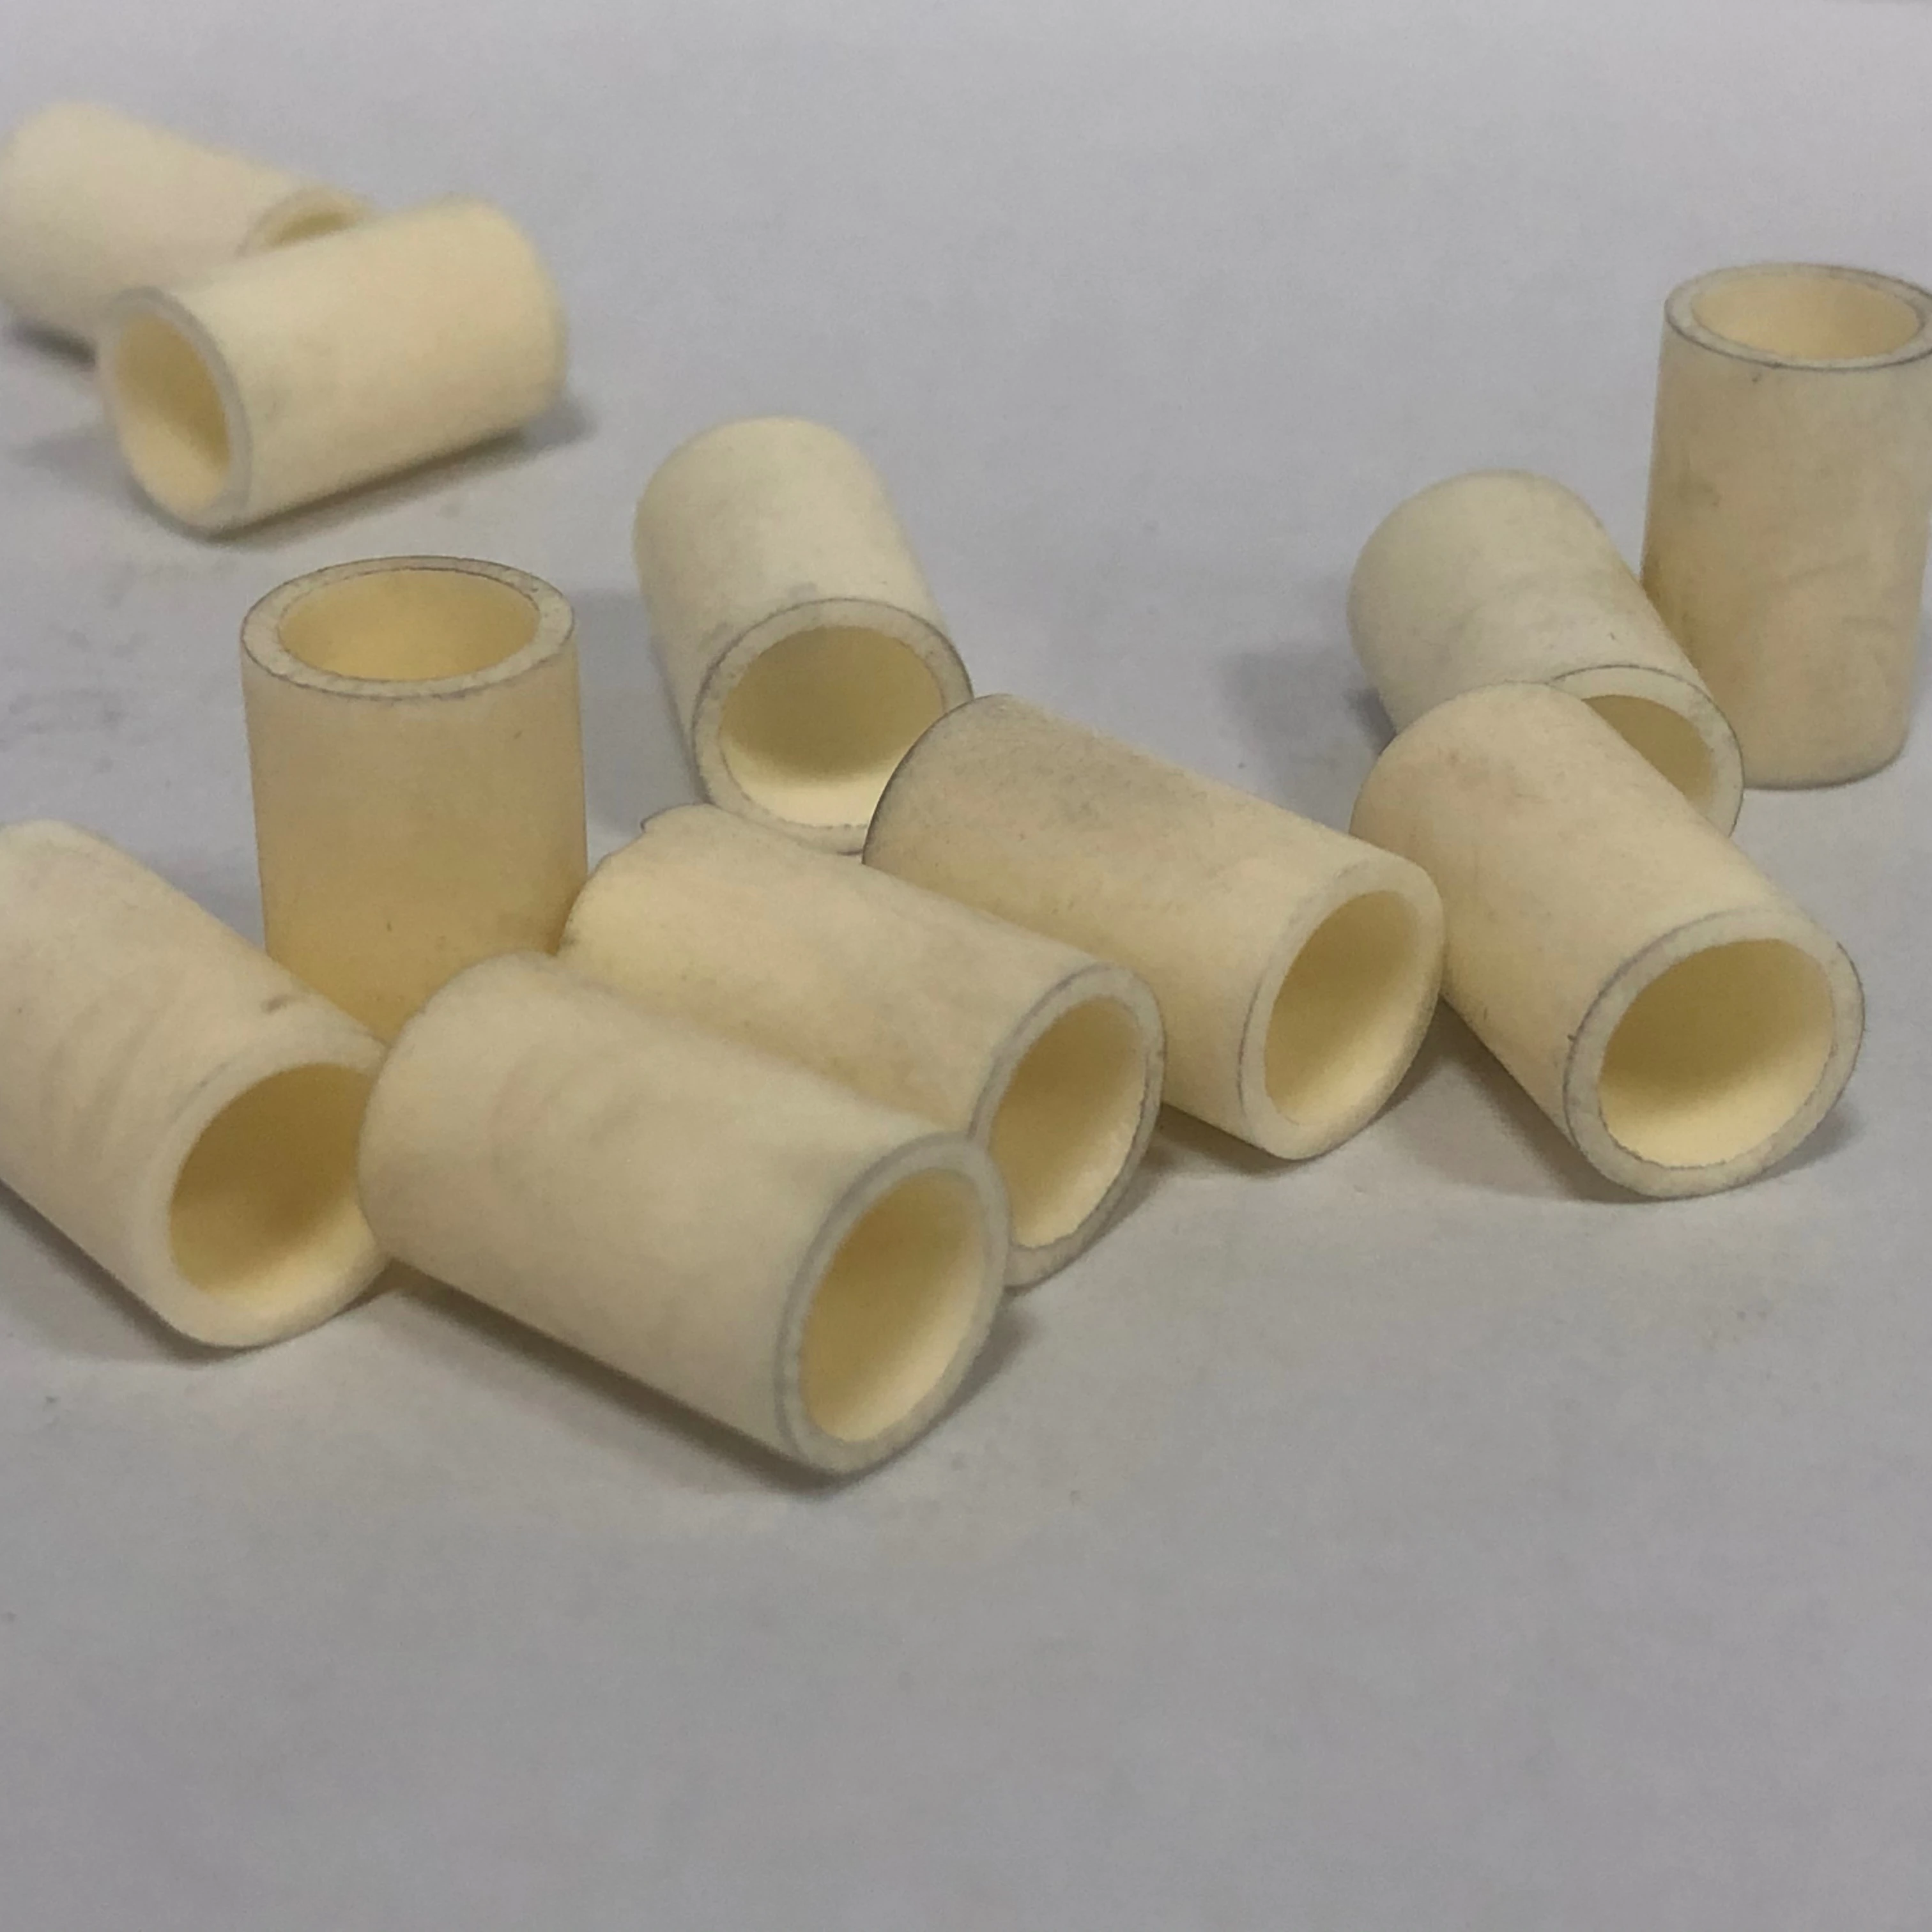 Heat resistant ceramic ring ceramic products